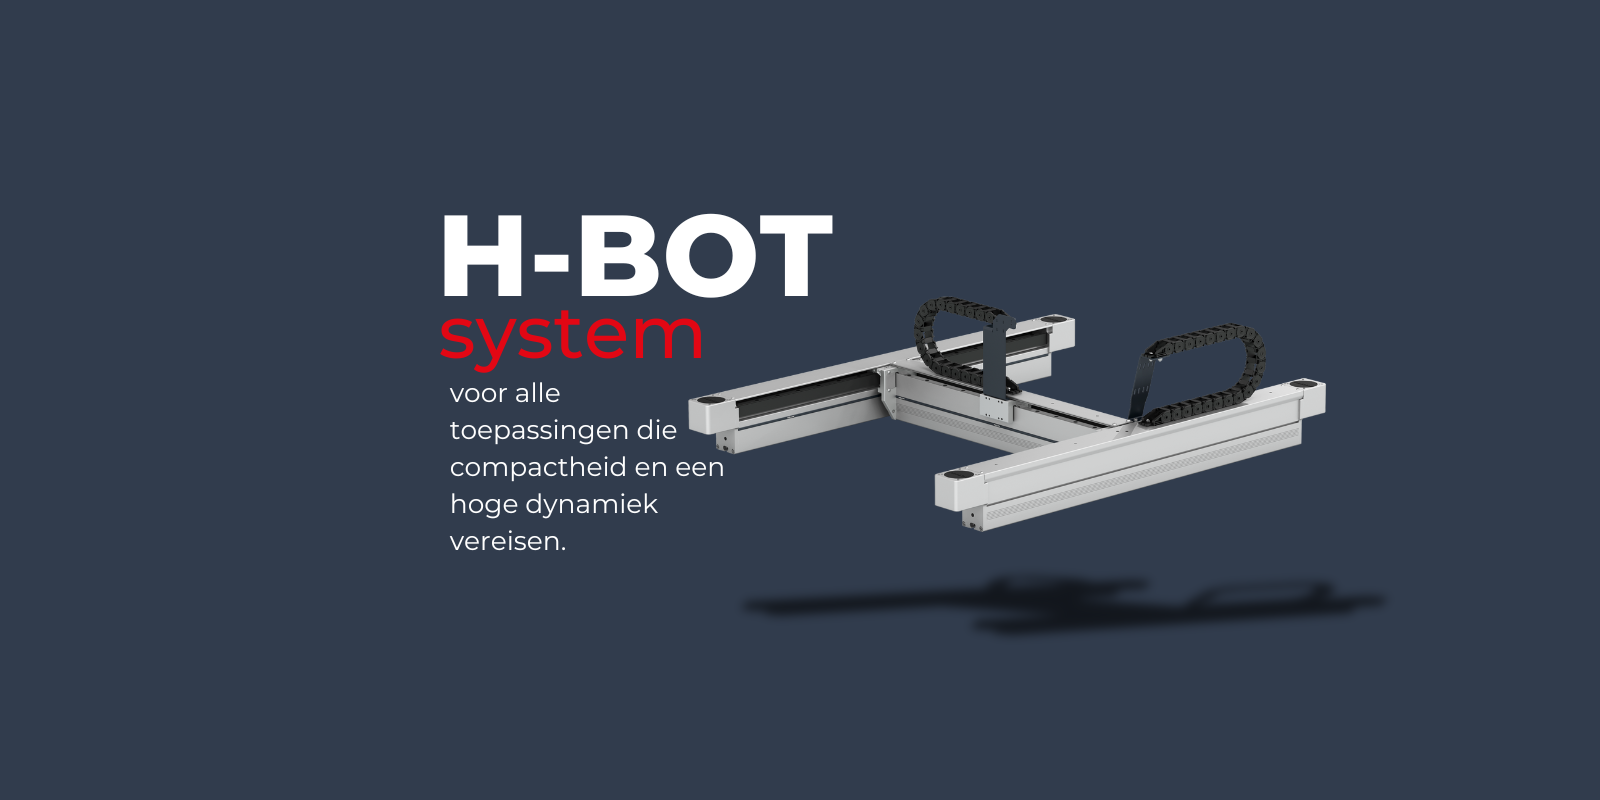 Ontdek het nieuwe H-Bot portaalsysteem